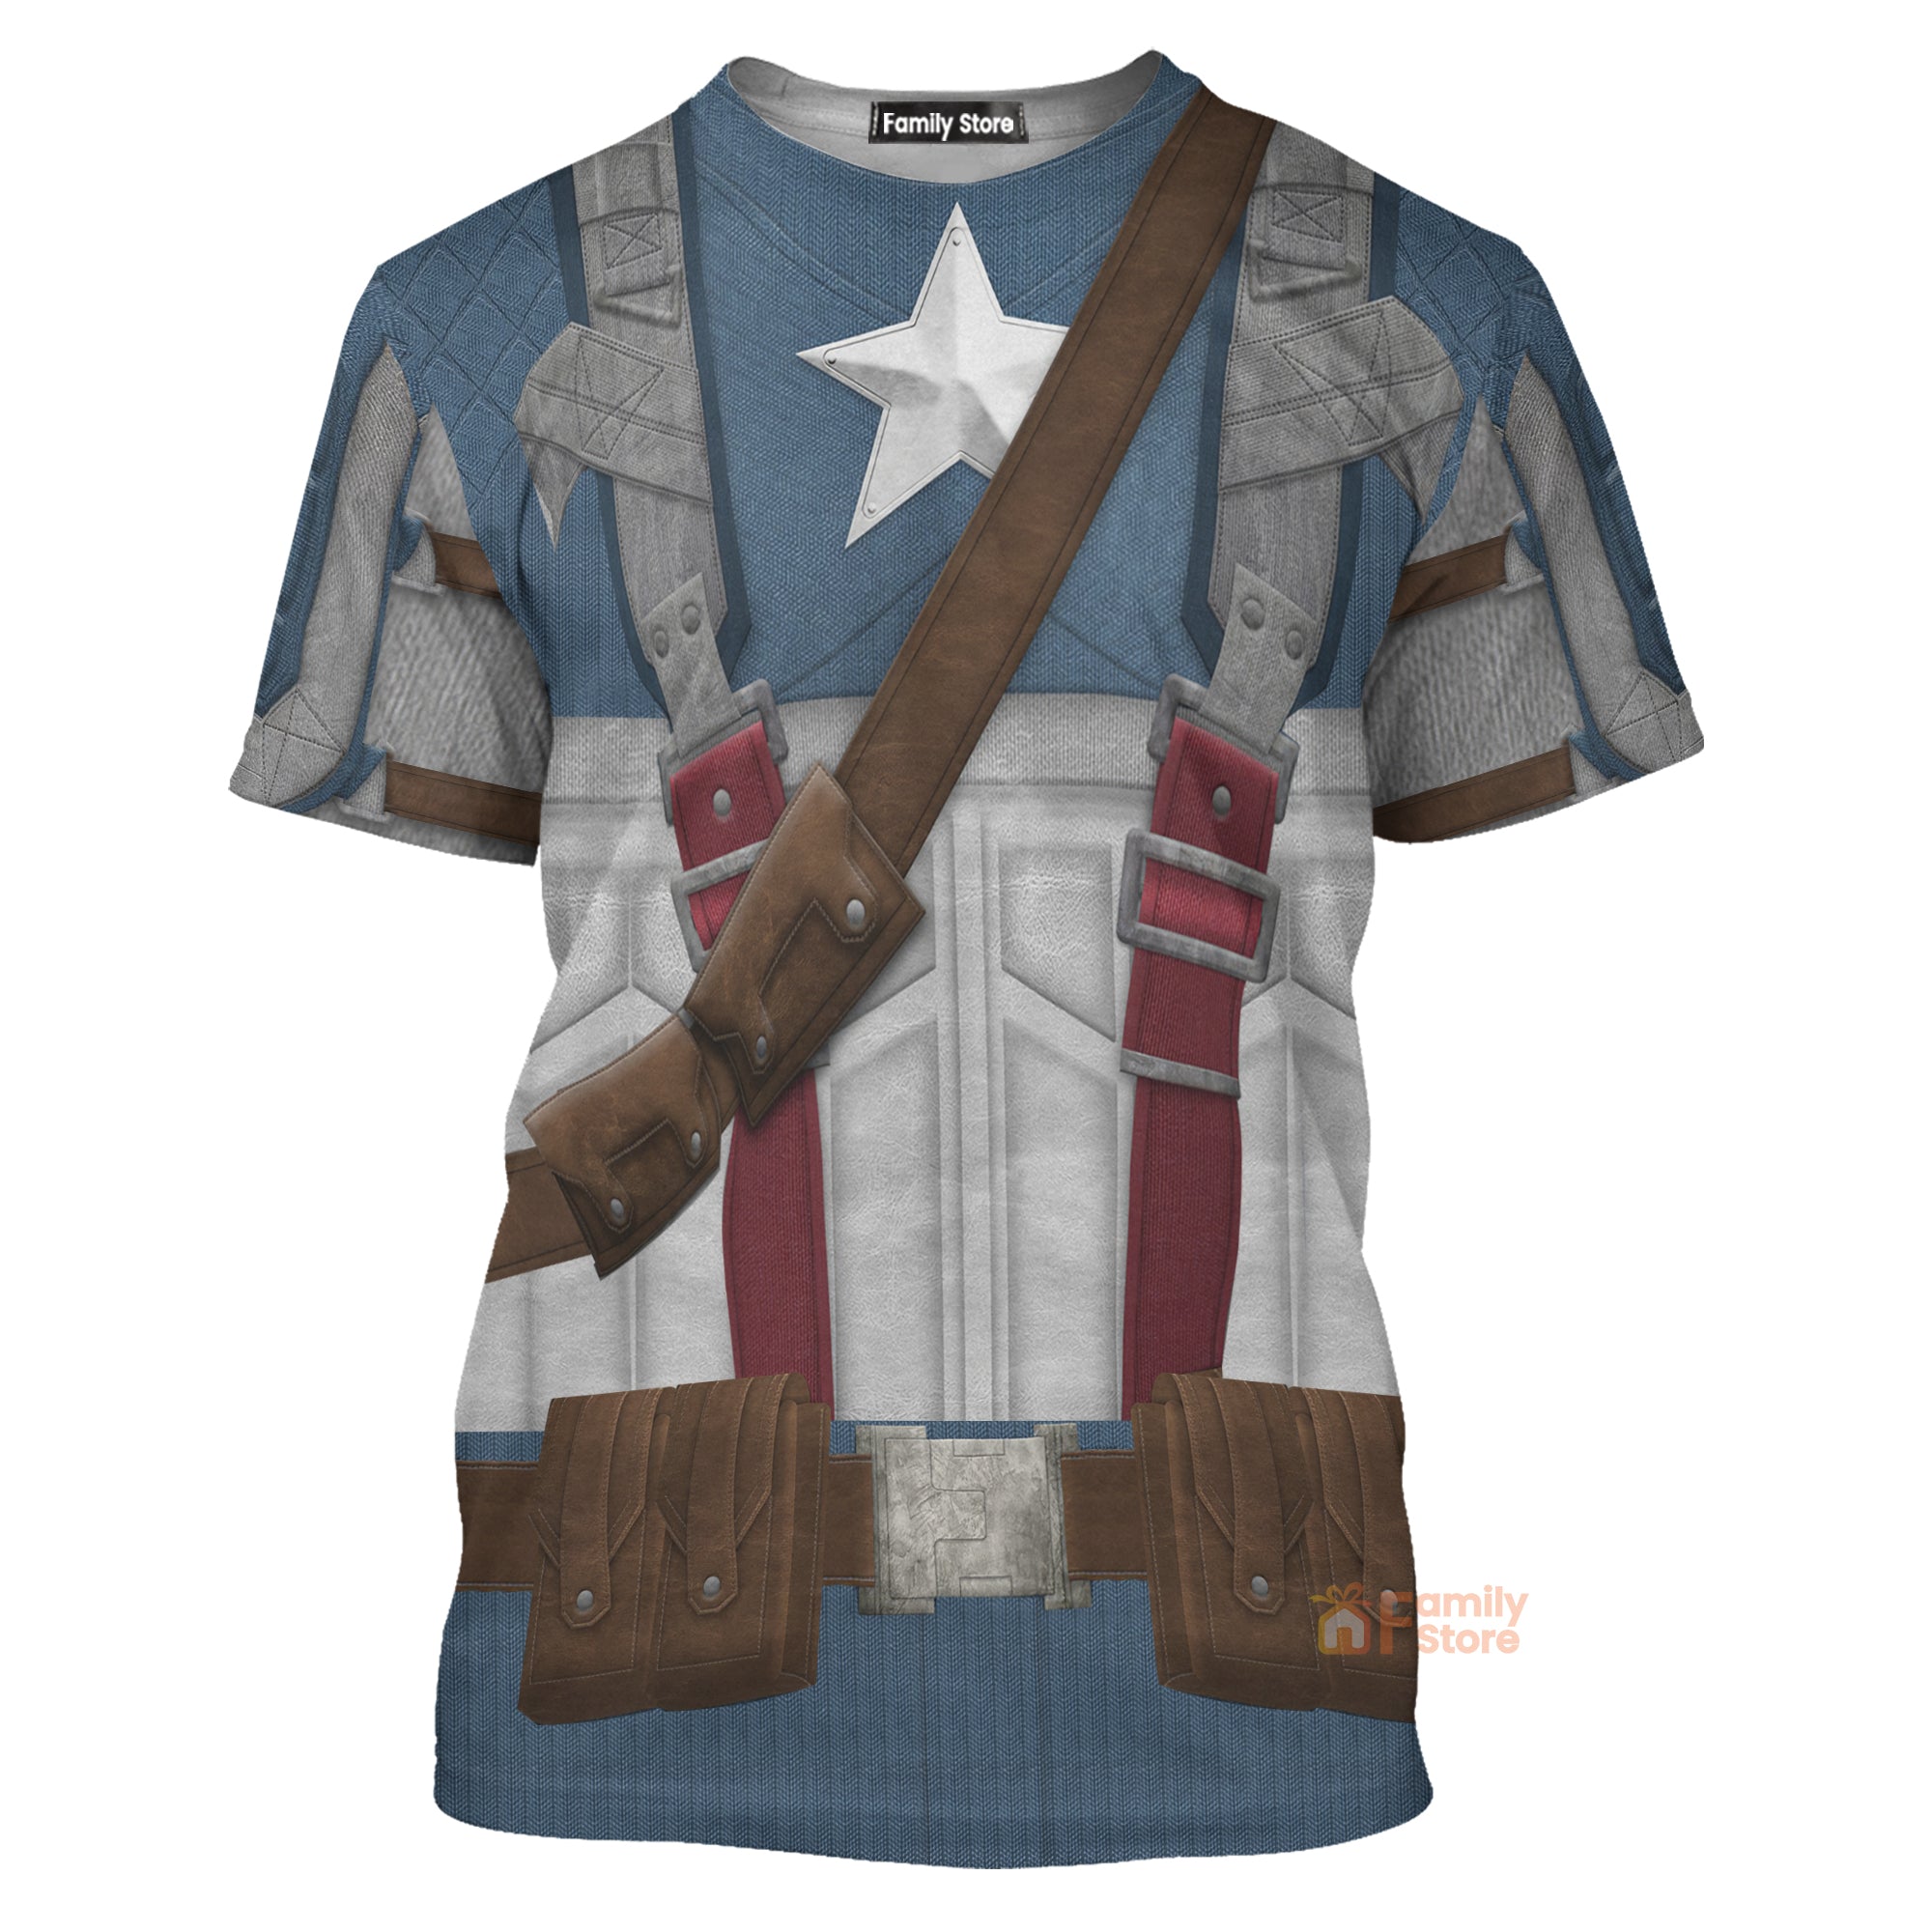 Captain America The First Avenger Costume T-Shirt